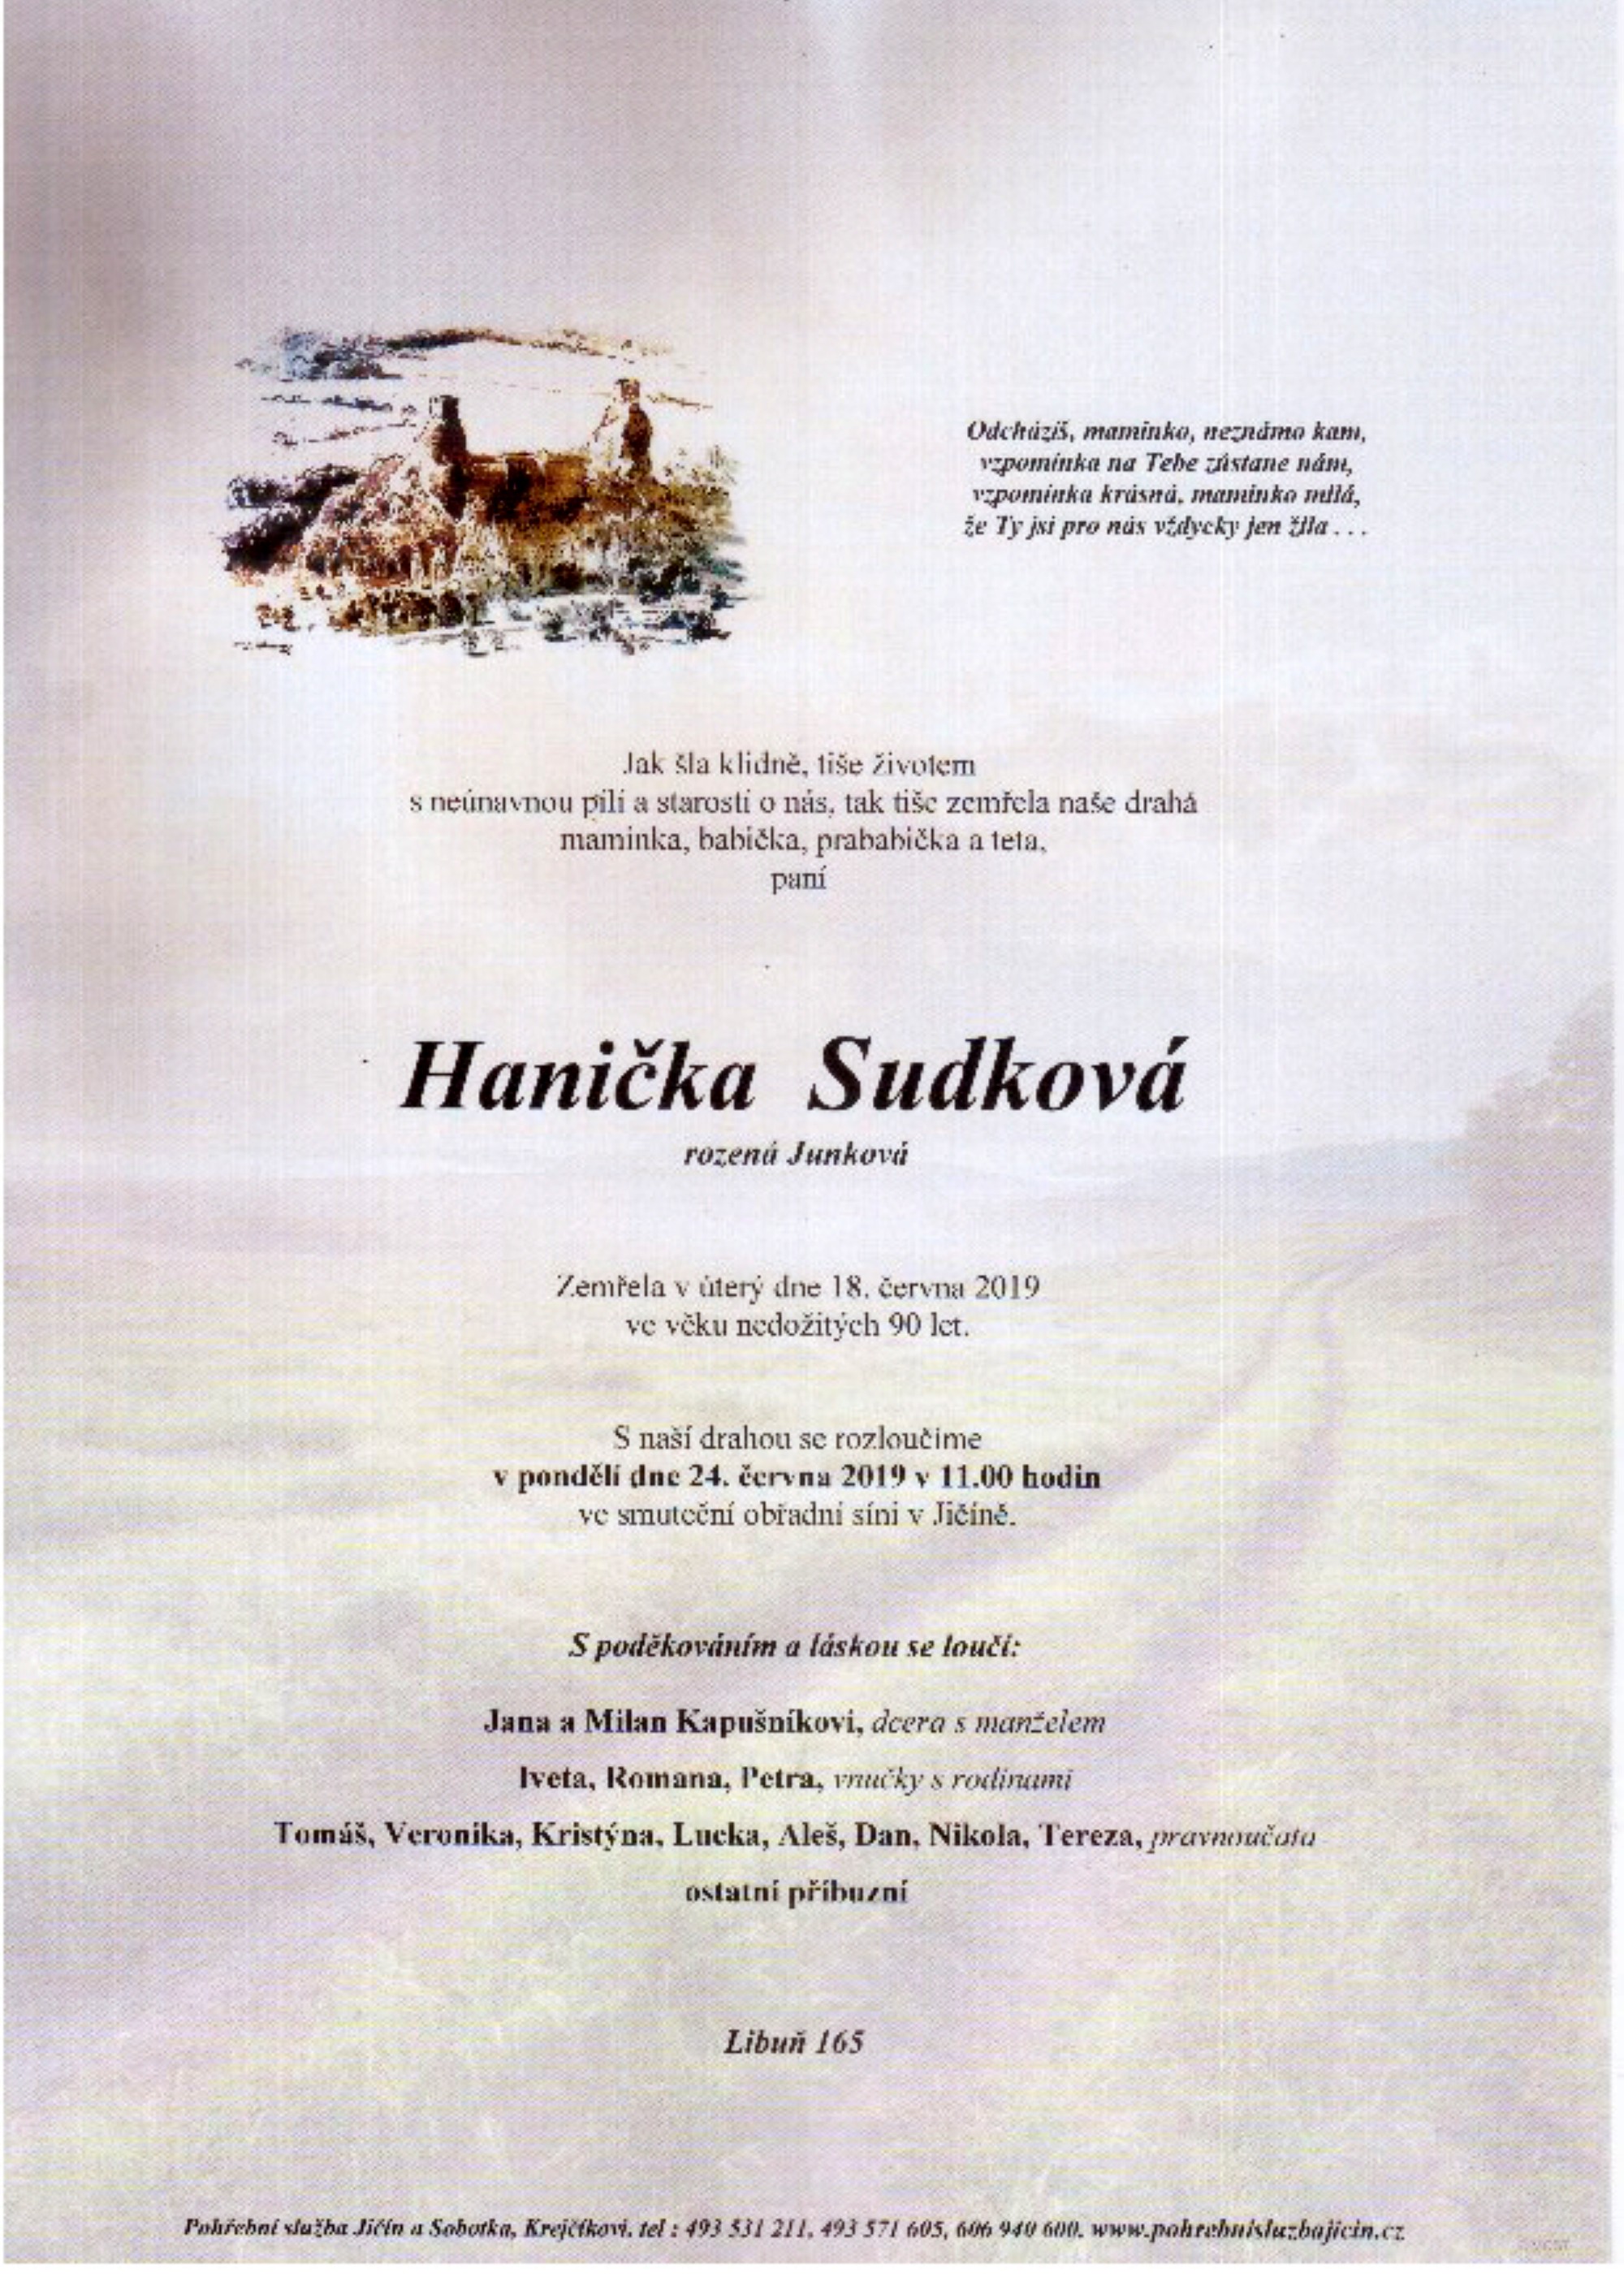 Hanička Sudková